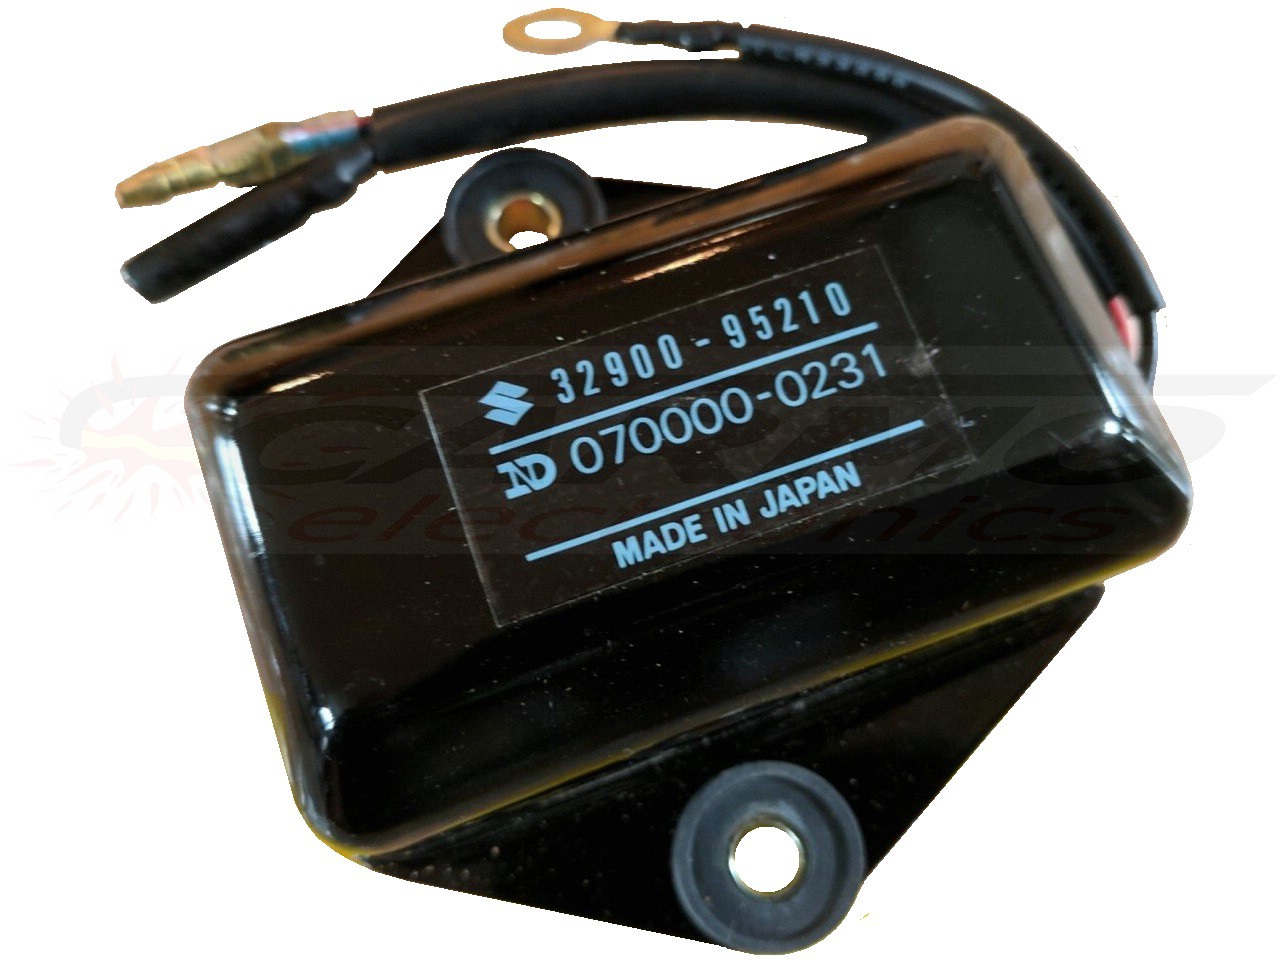 DT20 - DT65 TCI CDI unidad de control (32900-95210, 070000-0231)